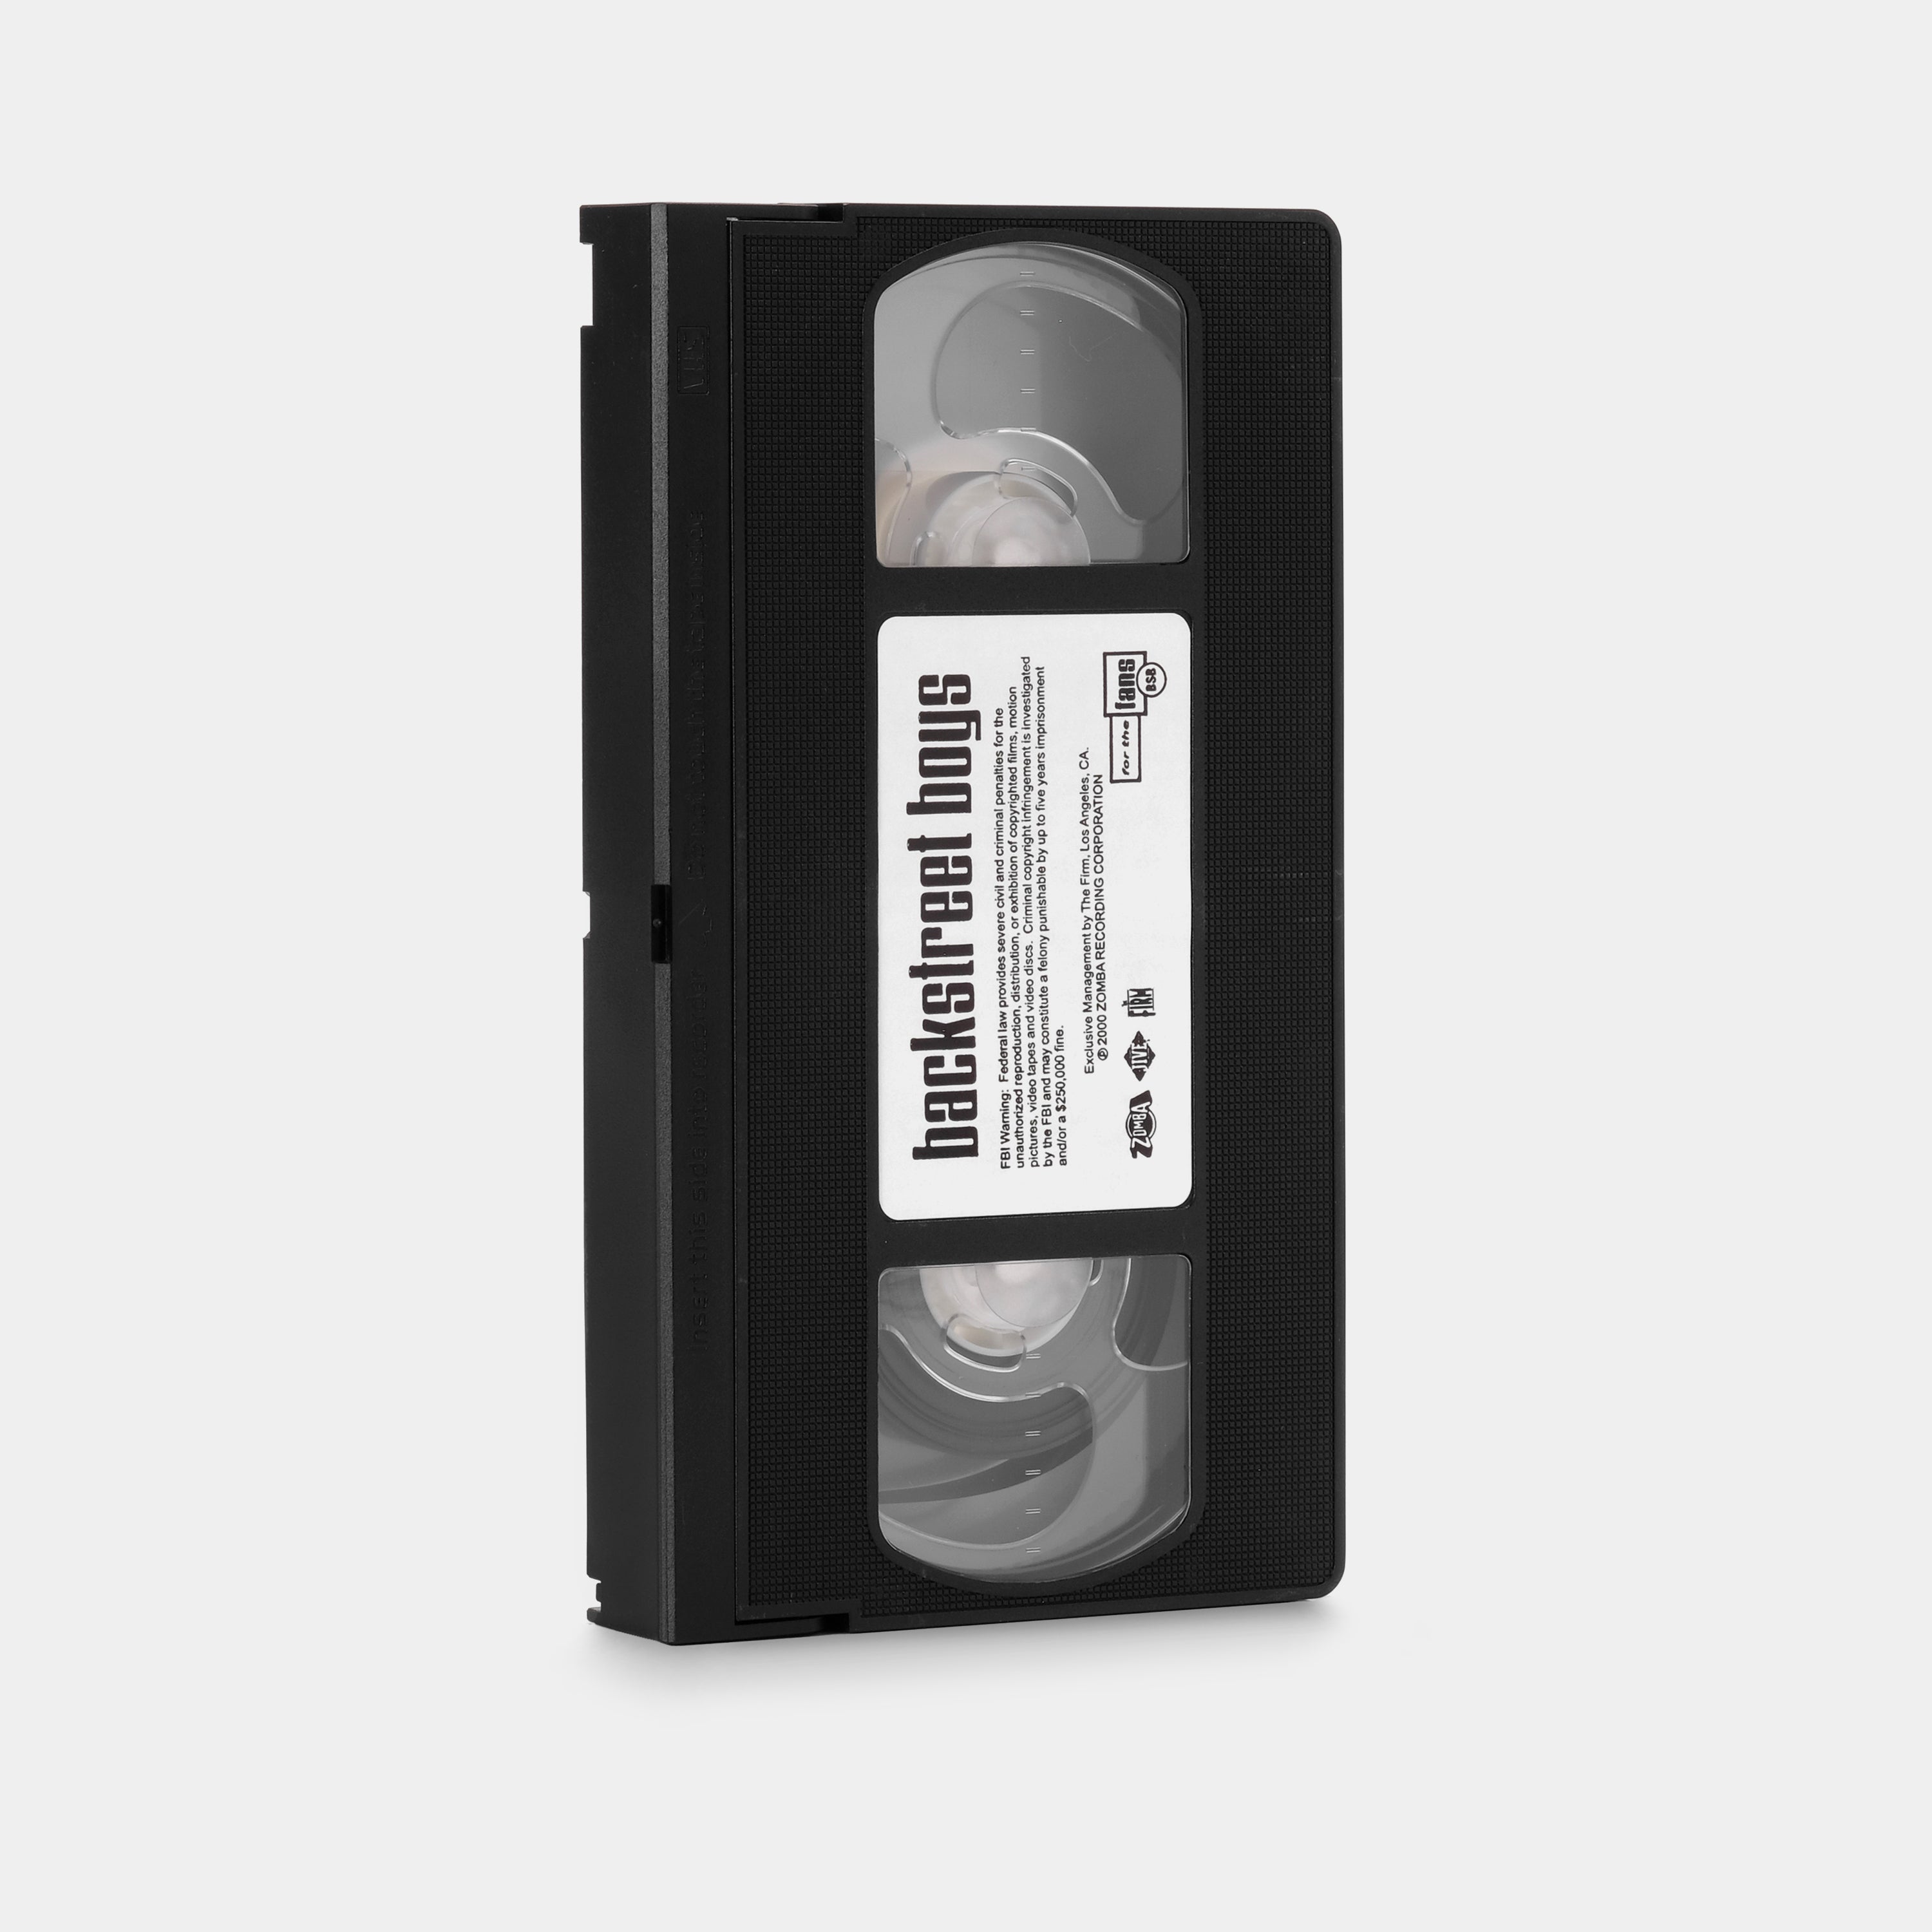 Backstreet Boys: For the Fans VHS Tape